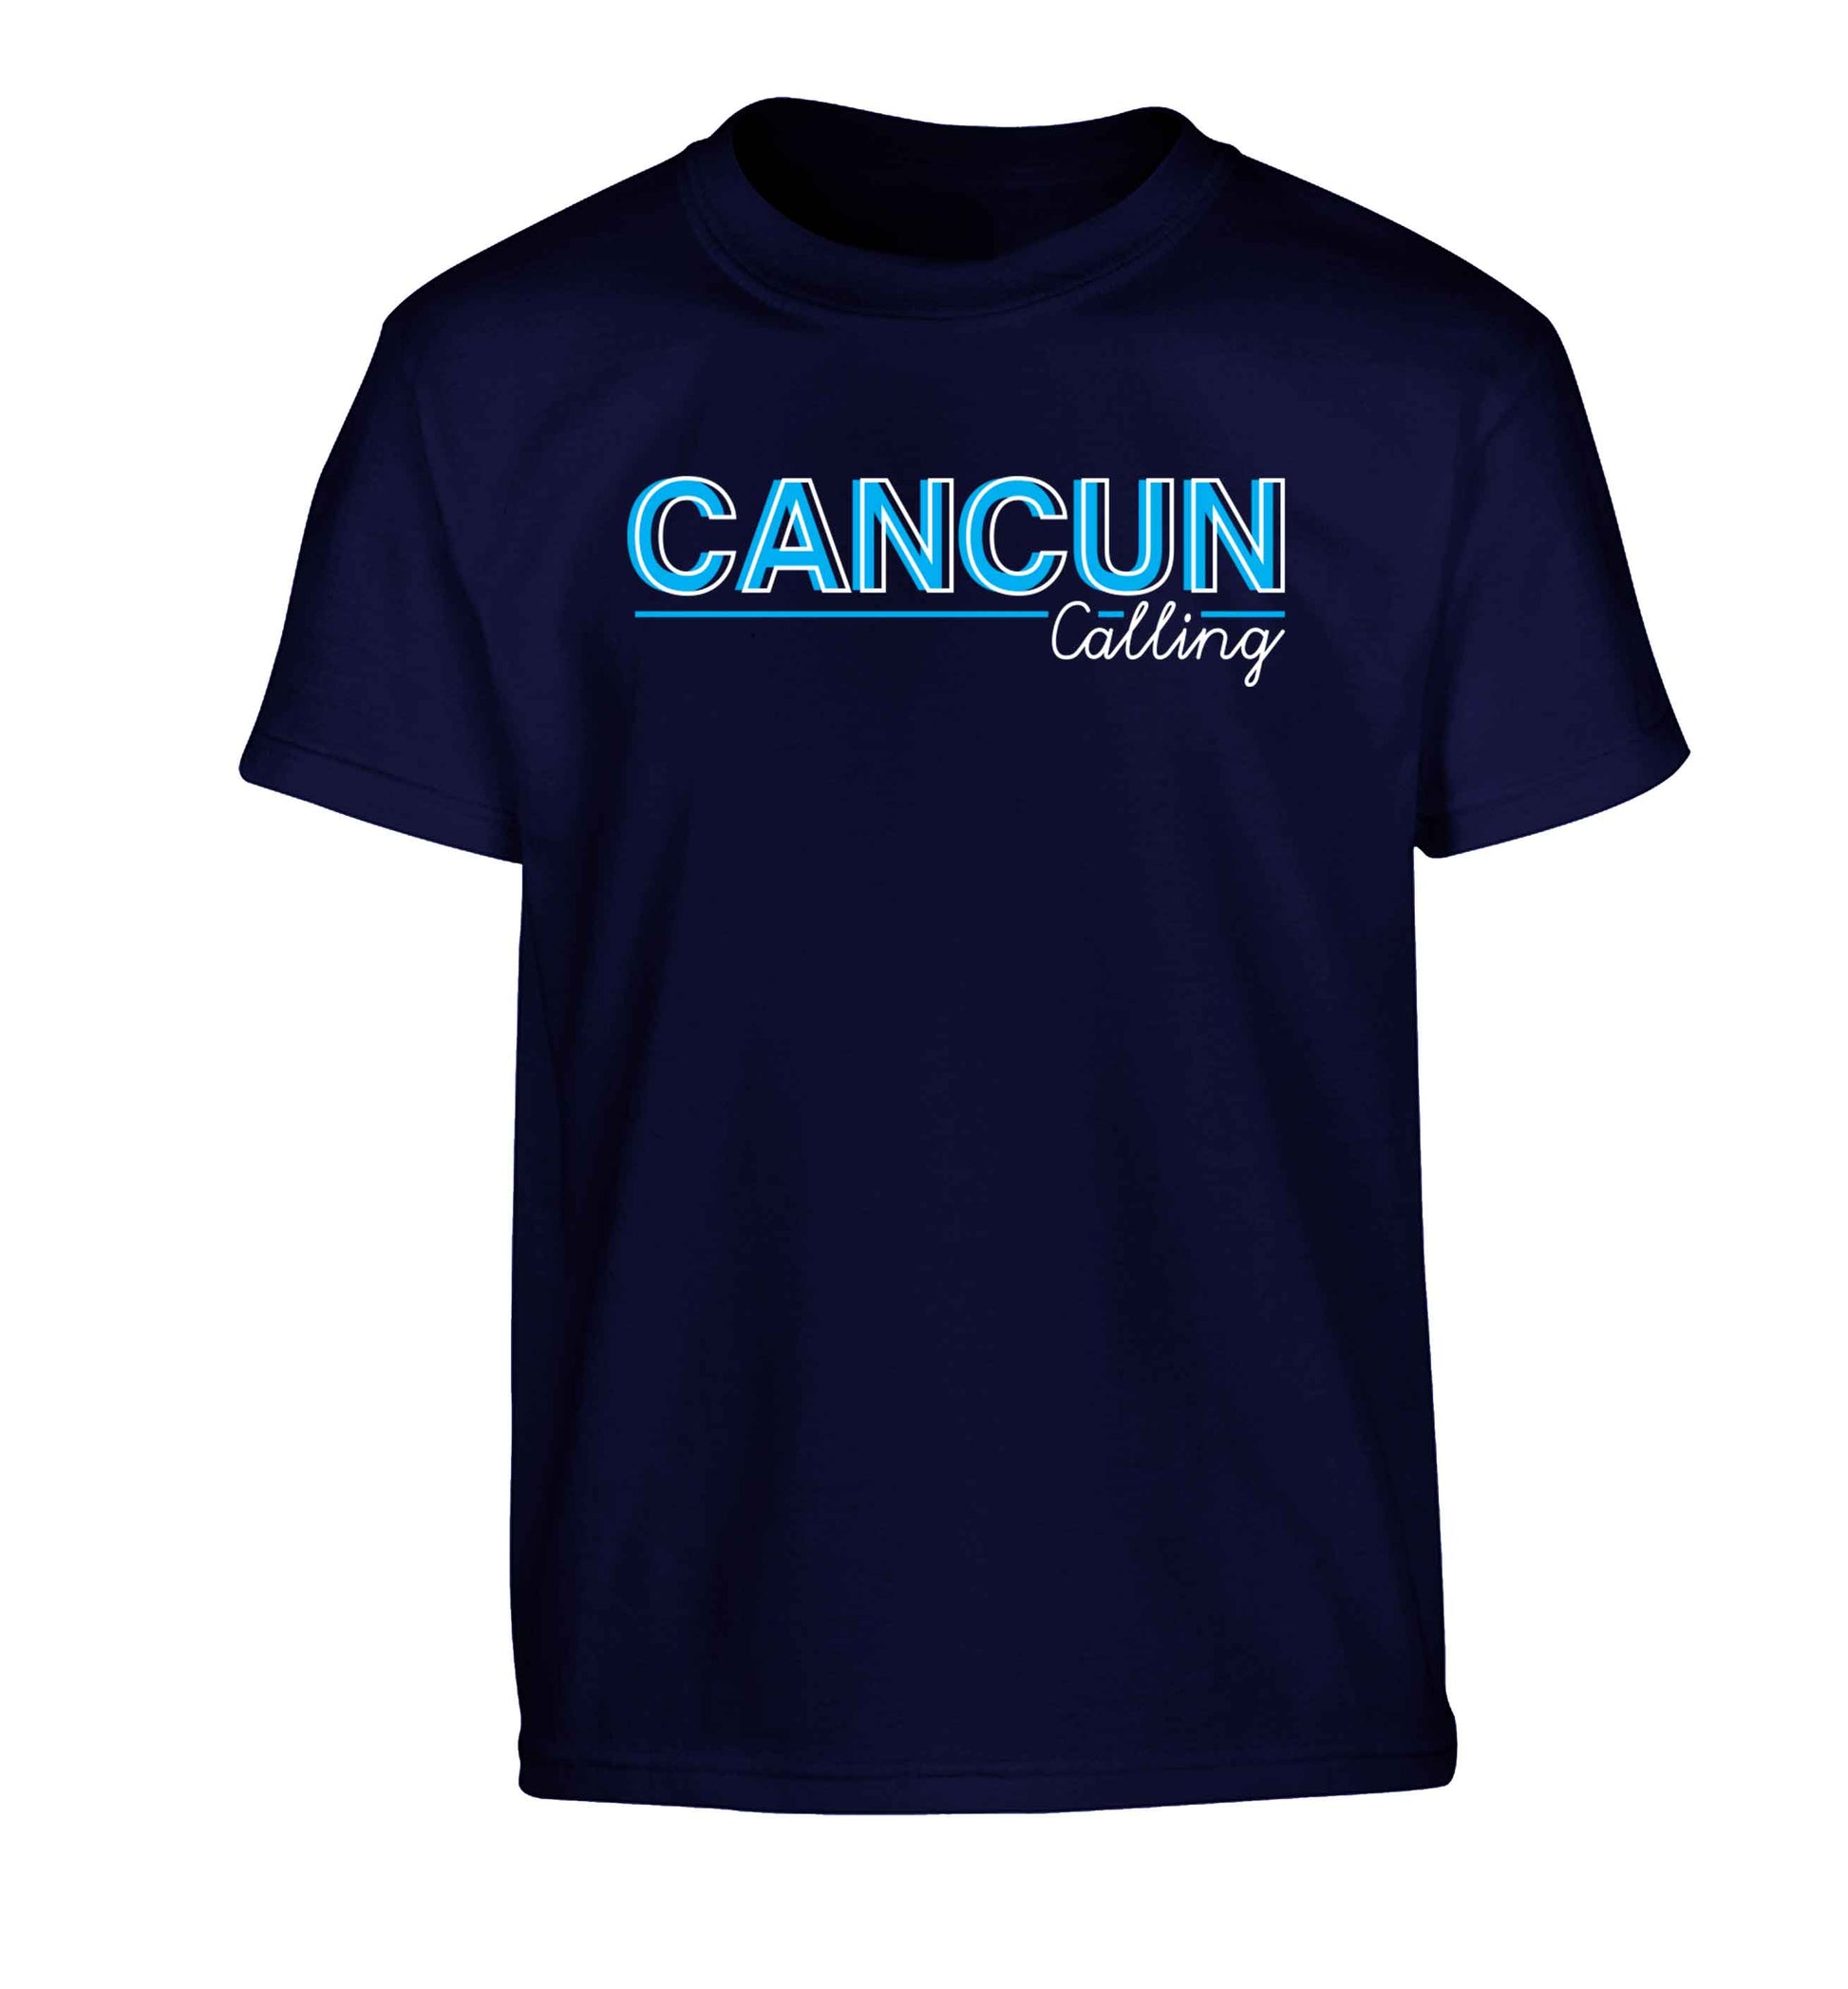 Cancun calling Children's navy Tshirt 12-13 Years